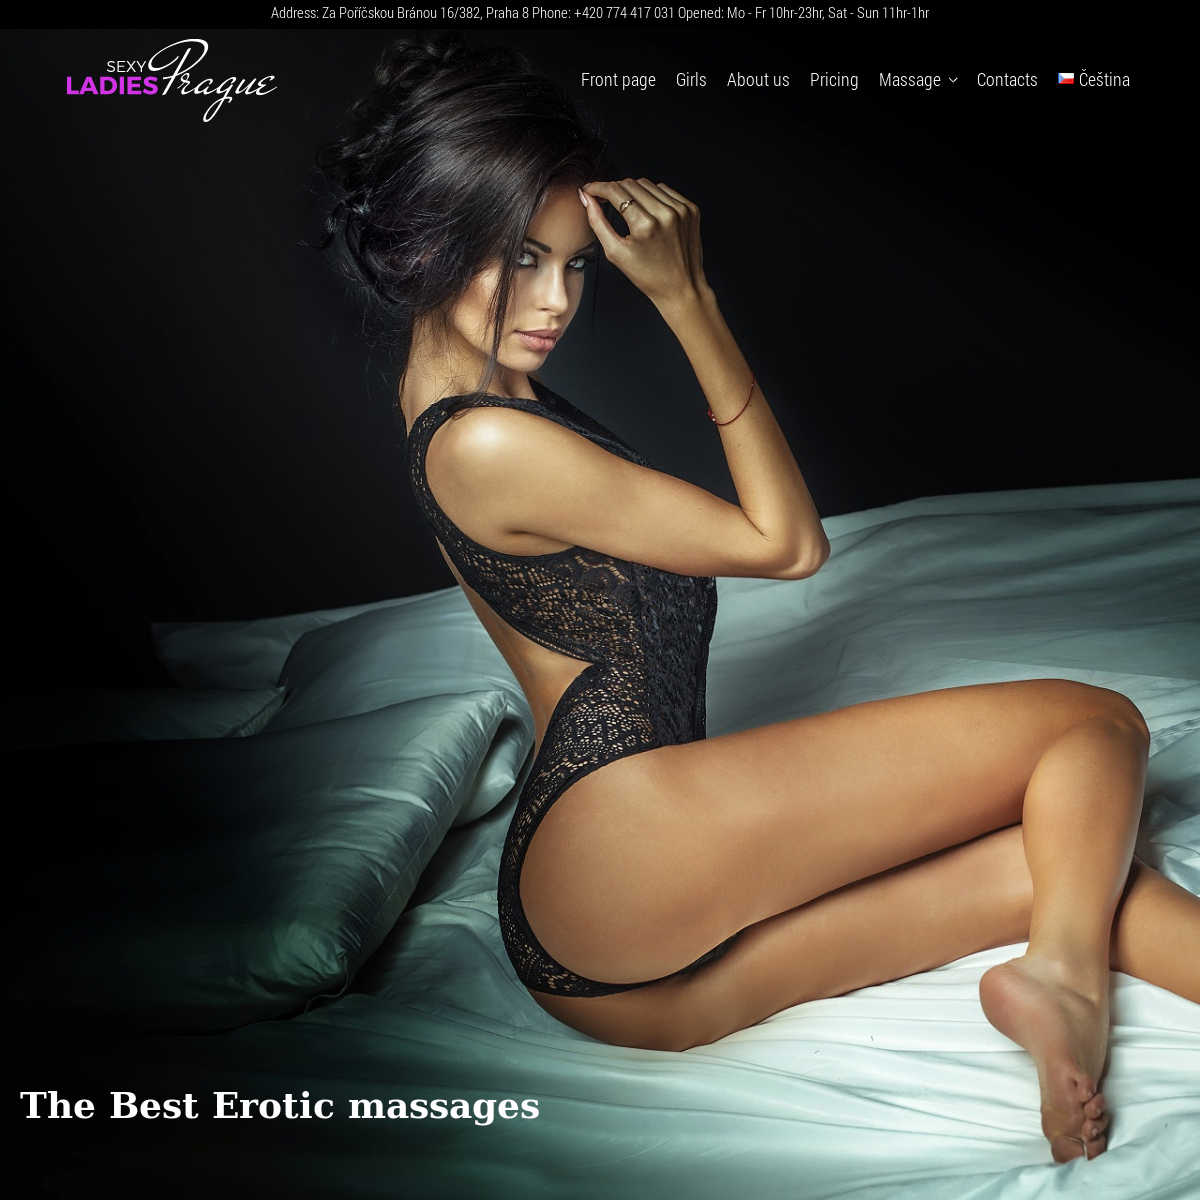 Prague erotic massage